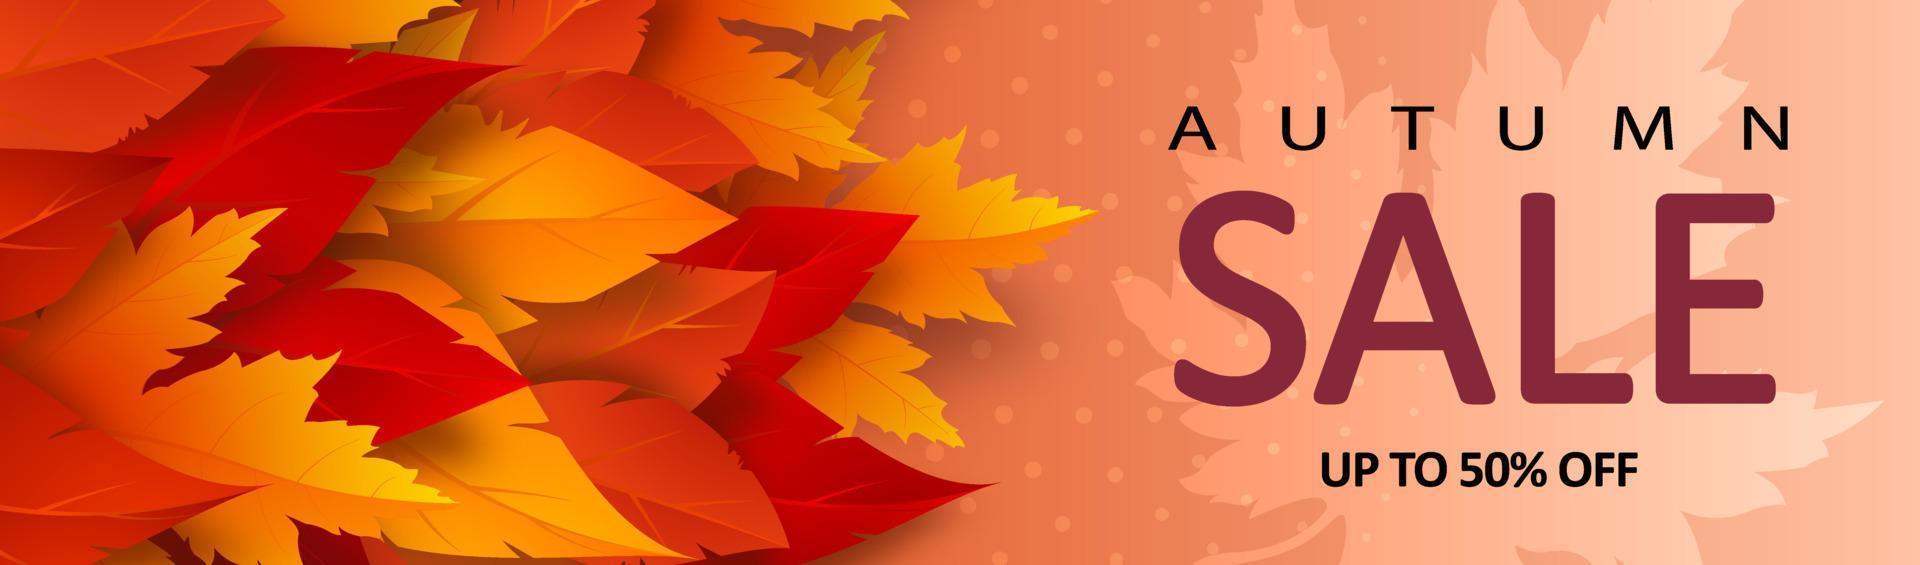 bannière de vente d'automne avec des feuilles et décoration de texte de remise publicitaire vecteur